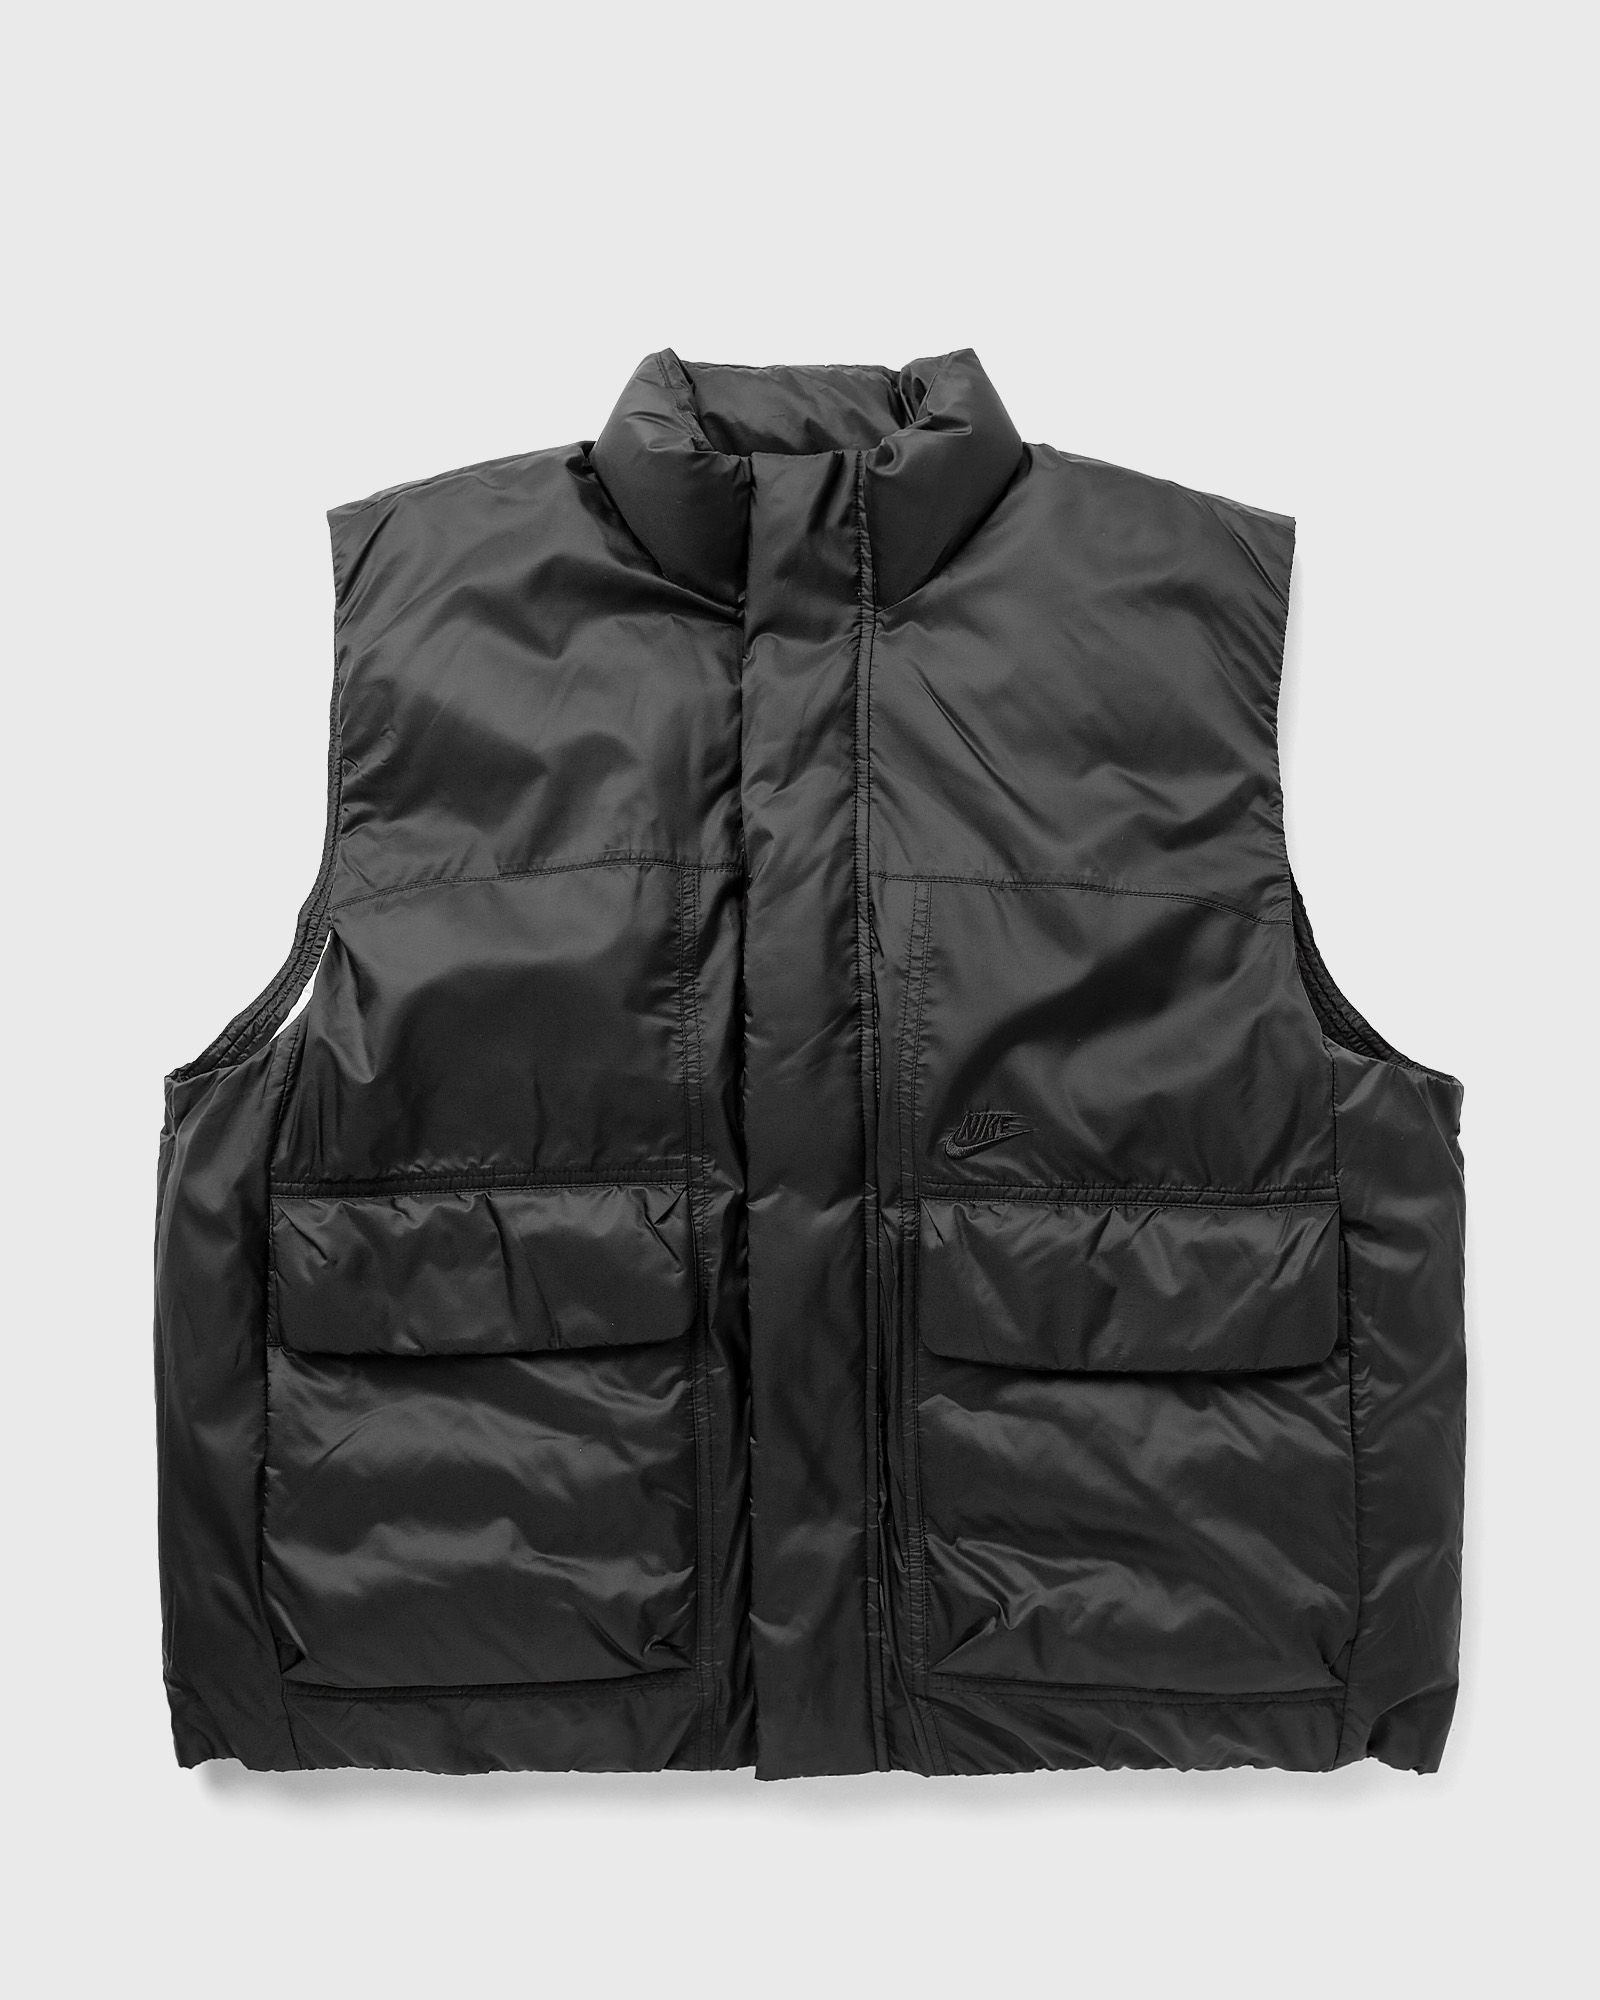 Nike - teck pack tfadv insulated woven vest men vests black in größe:l